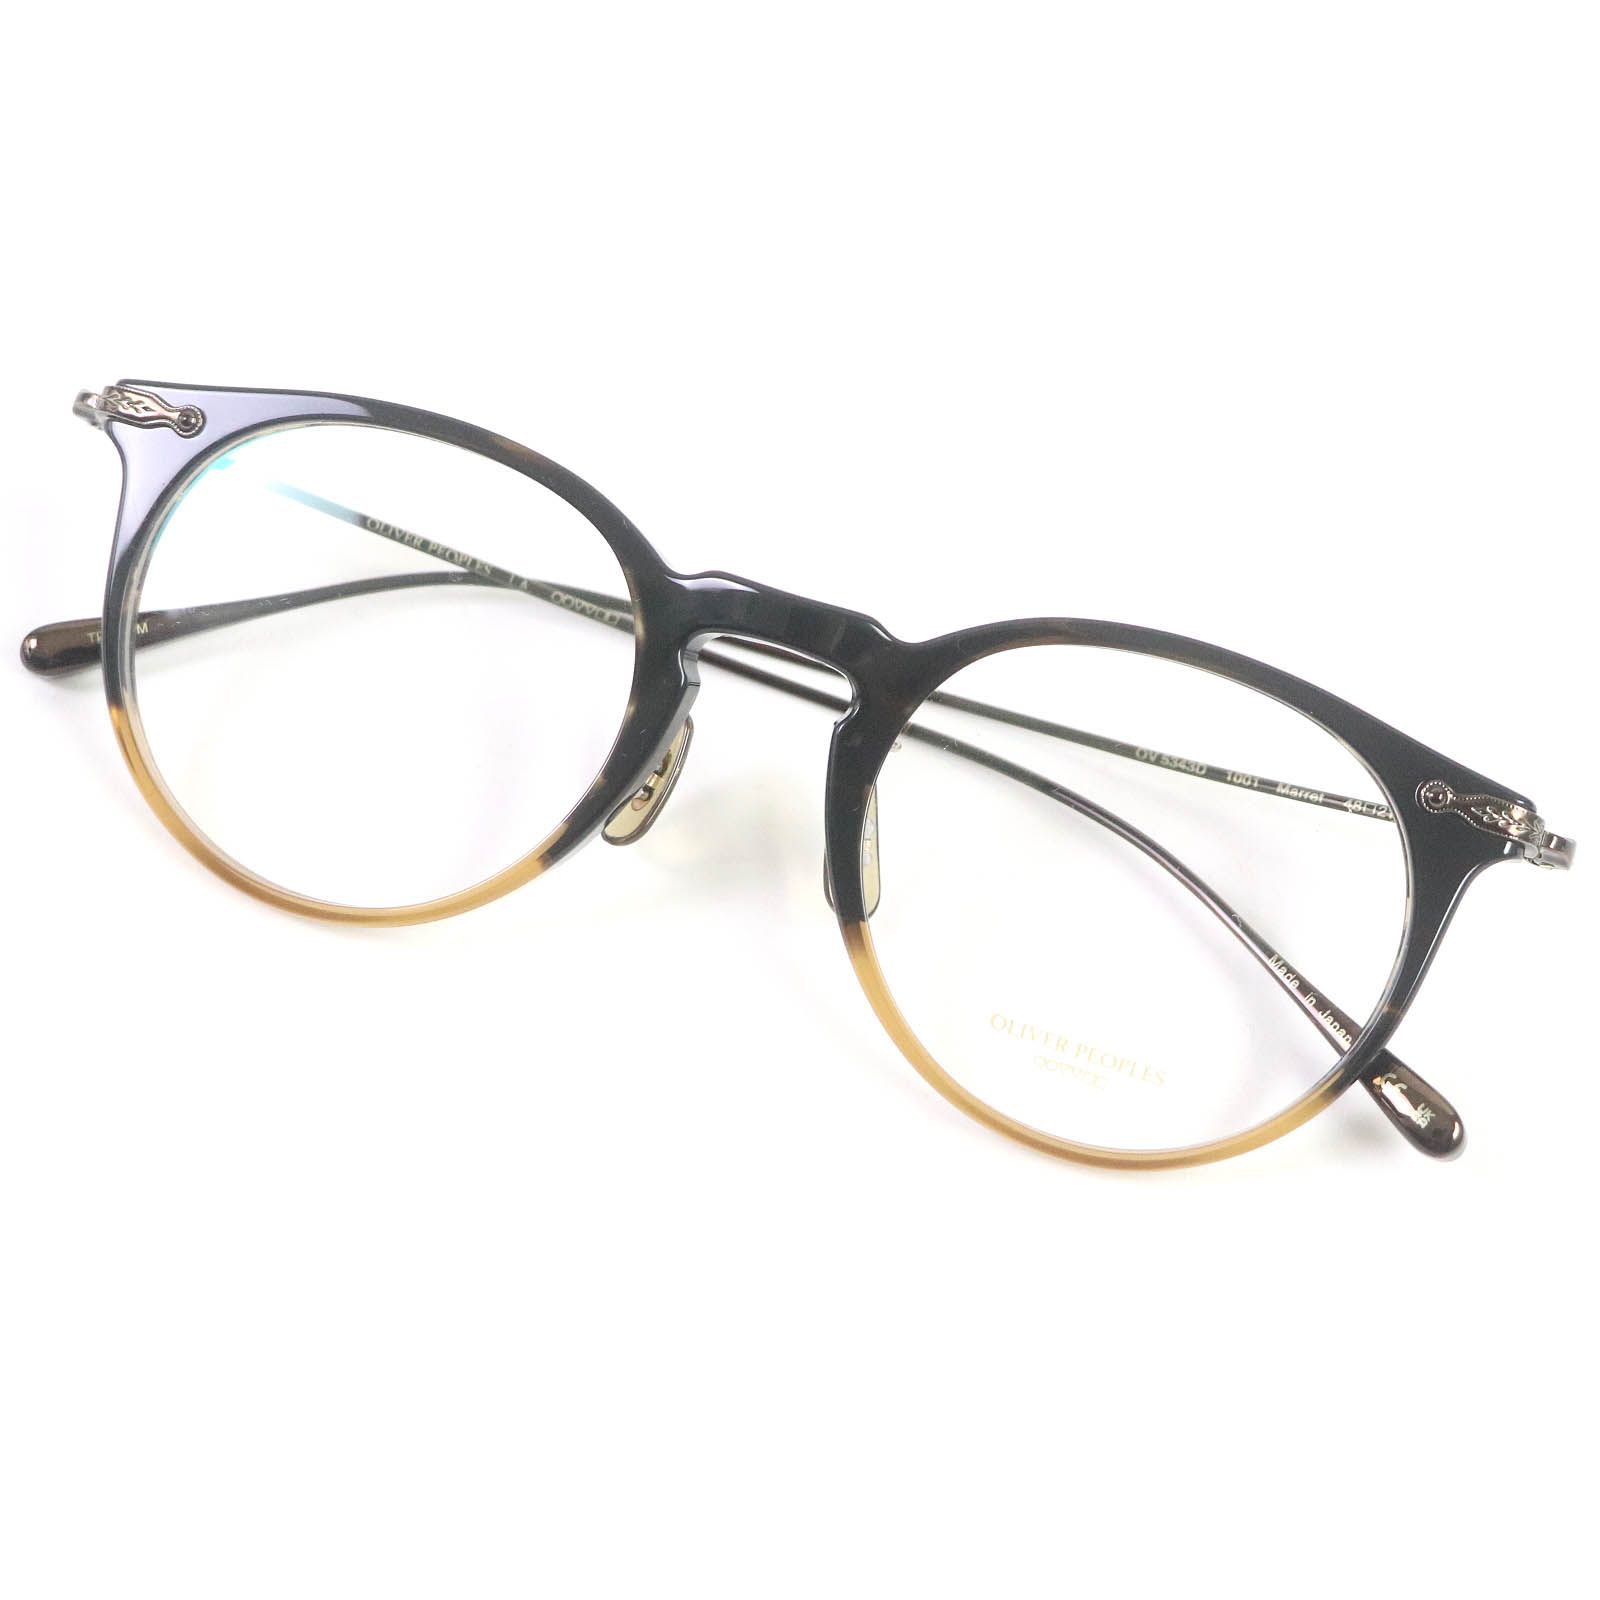 未使用品□OLIVER PEOPLES オリバーピープルズ OV5343D MARRET ボストンフレーム メガネ 眼鏡 アイウェア ブラック系  48□21-145 デモレンズ 日本製 メンズ